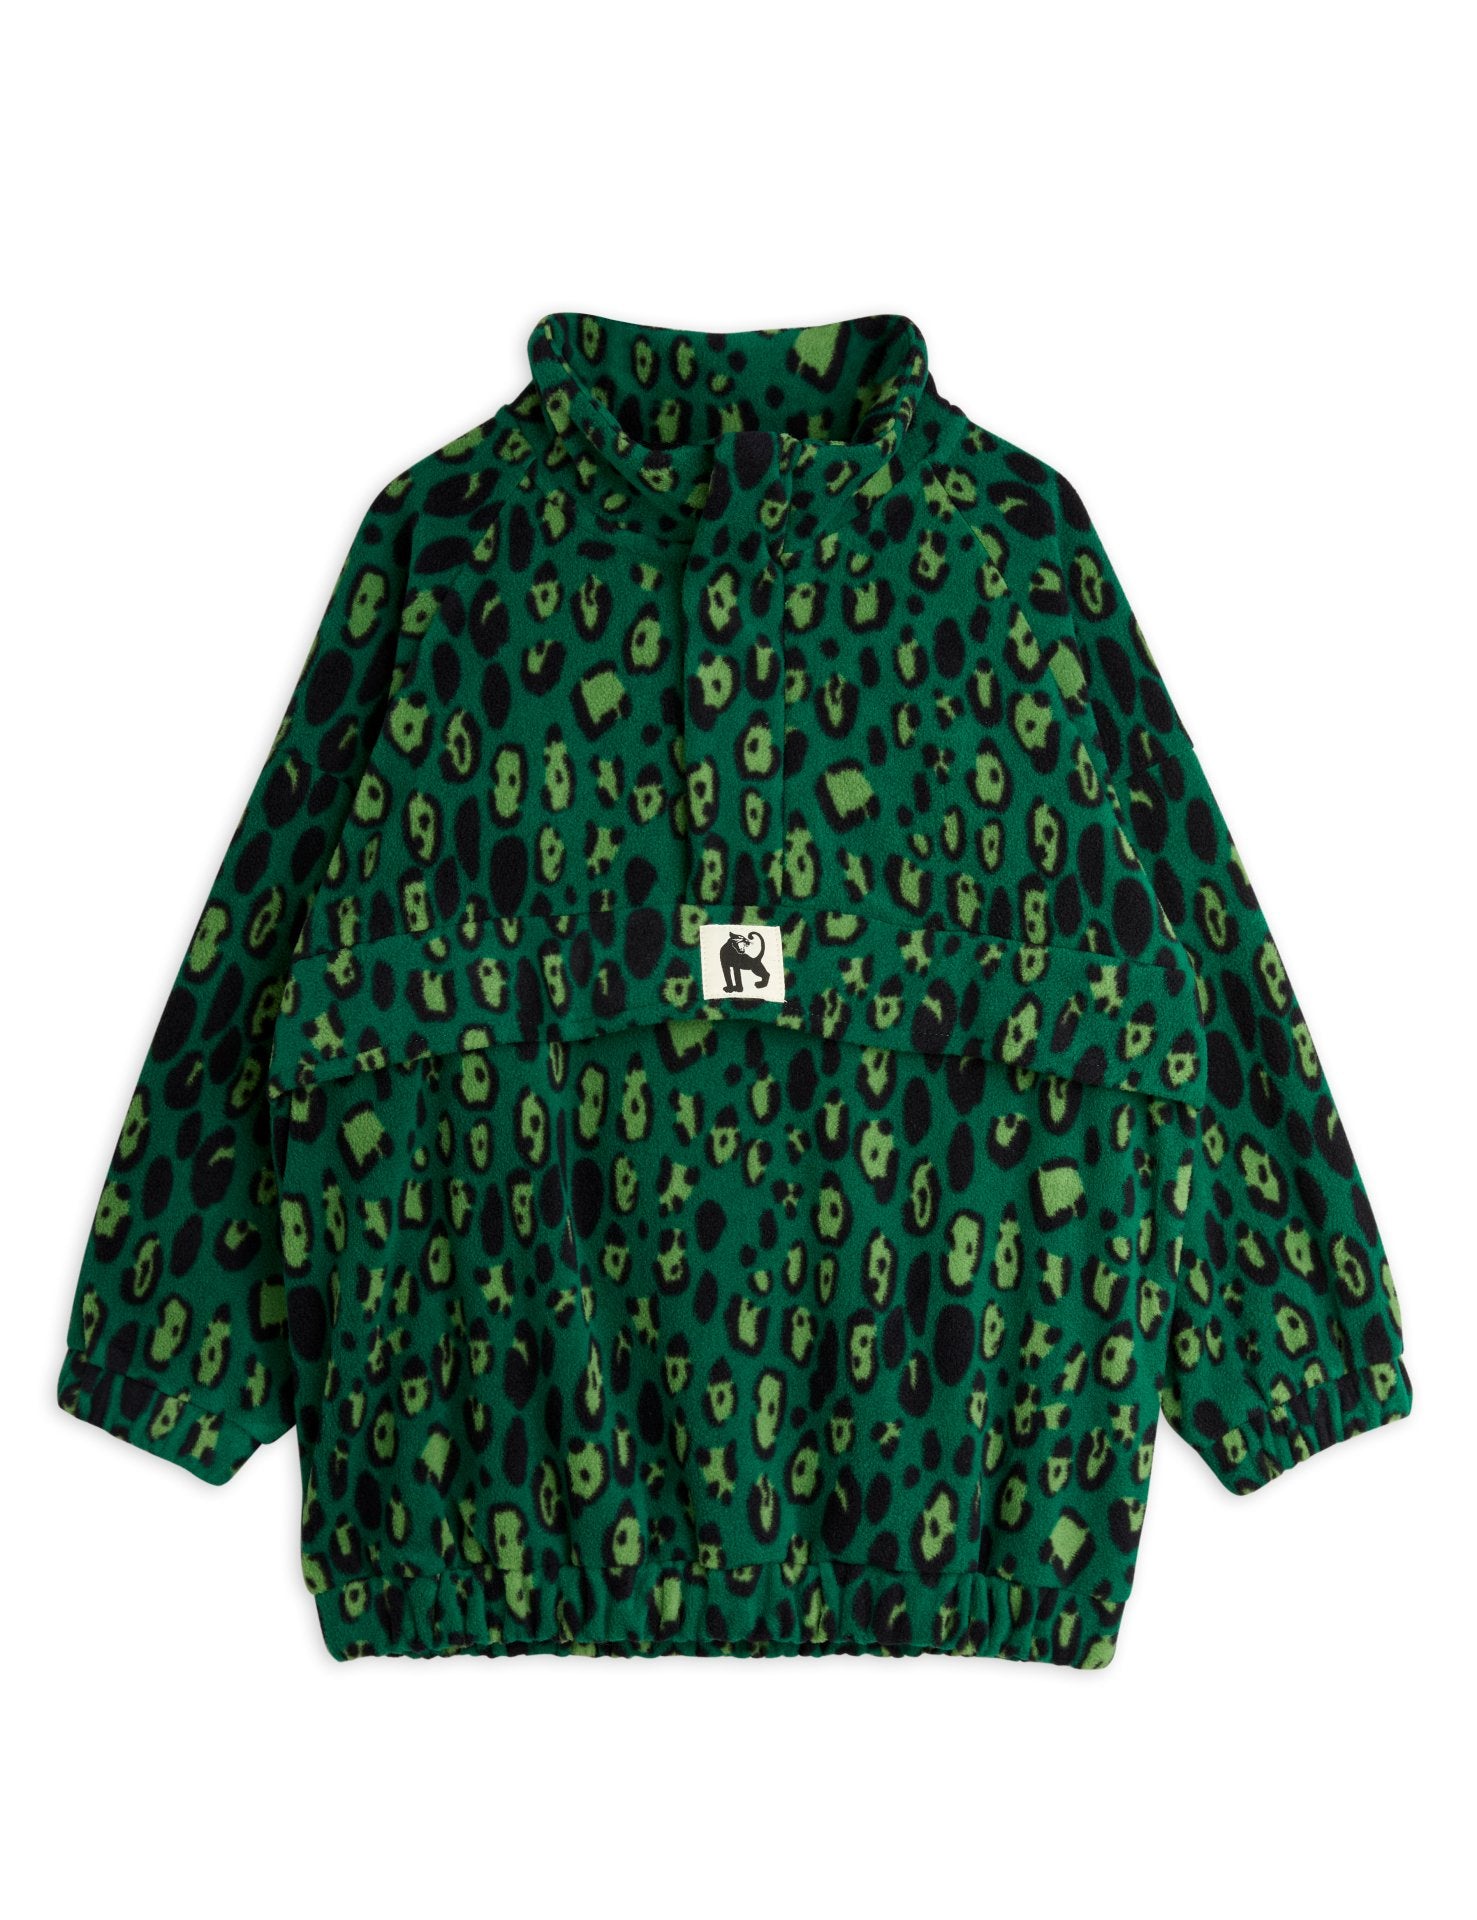 Leopard fleece zip pullover